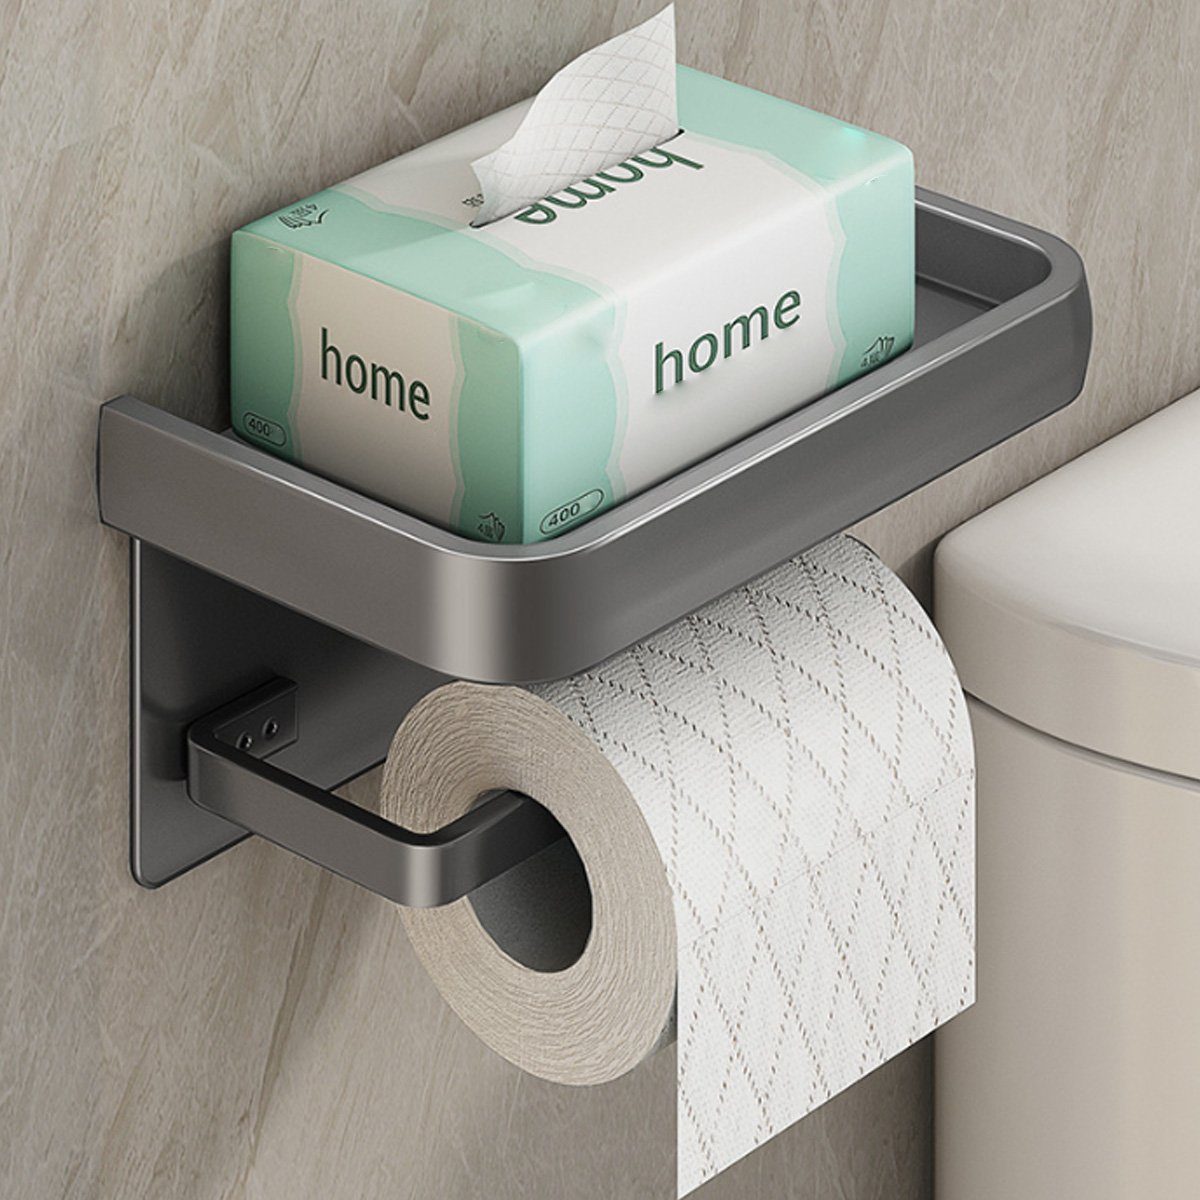 Jormftte Badezimmer Klopapierhalter Toilettenpapierhalter Toilettenpapierhalter,Selbstklebend für Grau